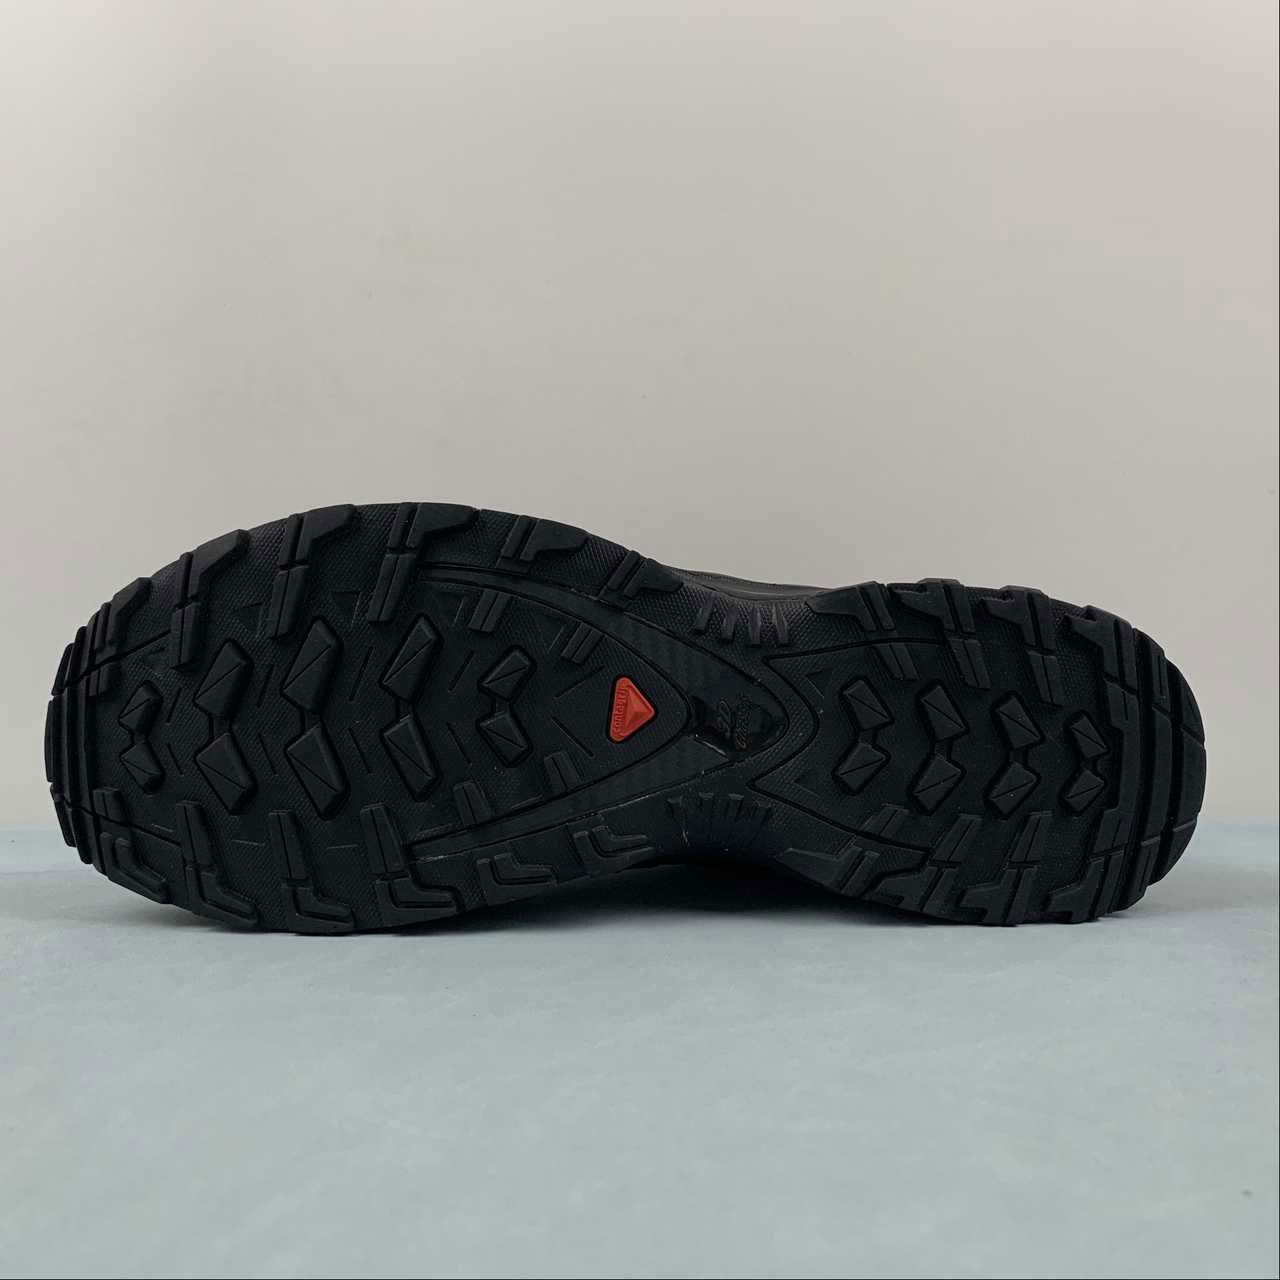 Salomon XA PRO-3D Retro Functional Fashion casual running shoes 412551 5